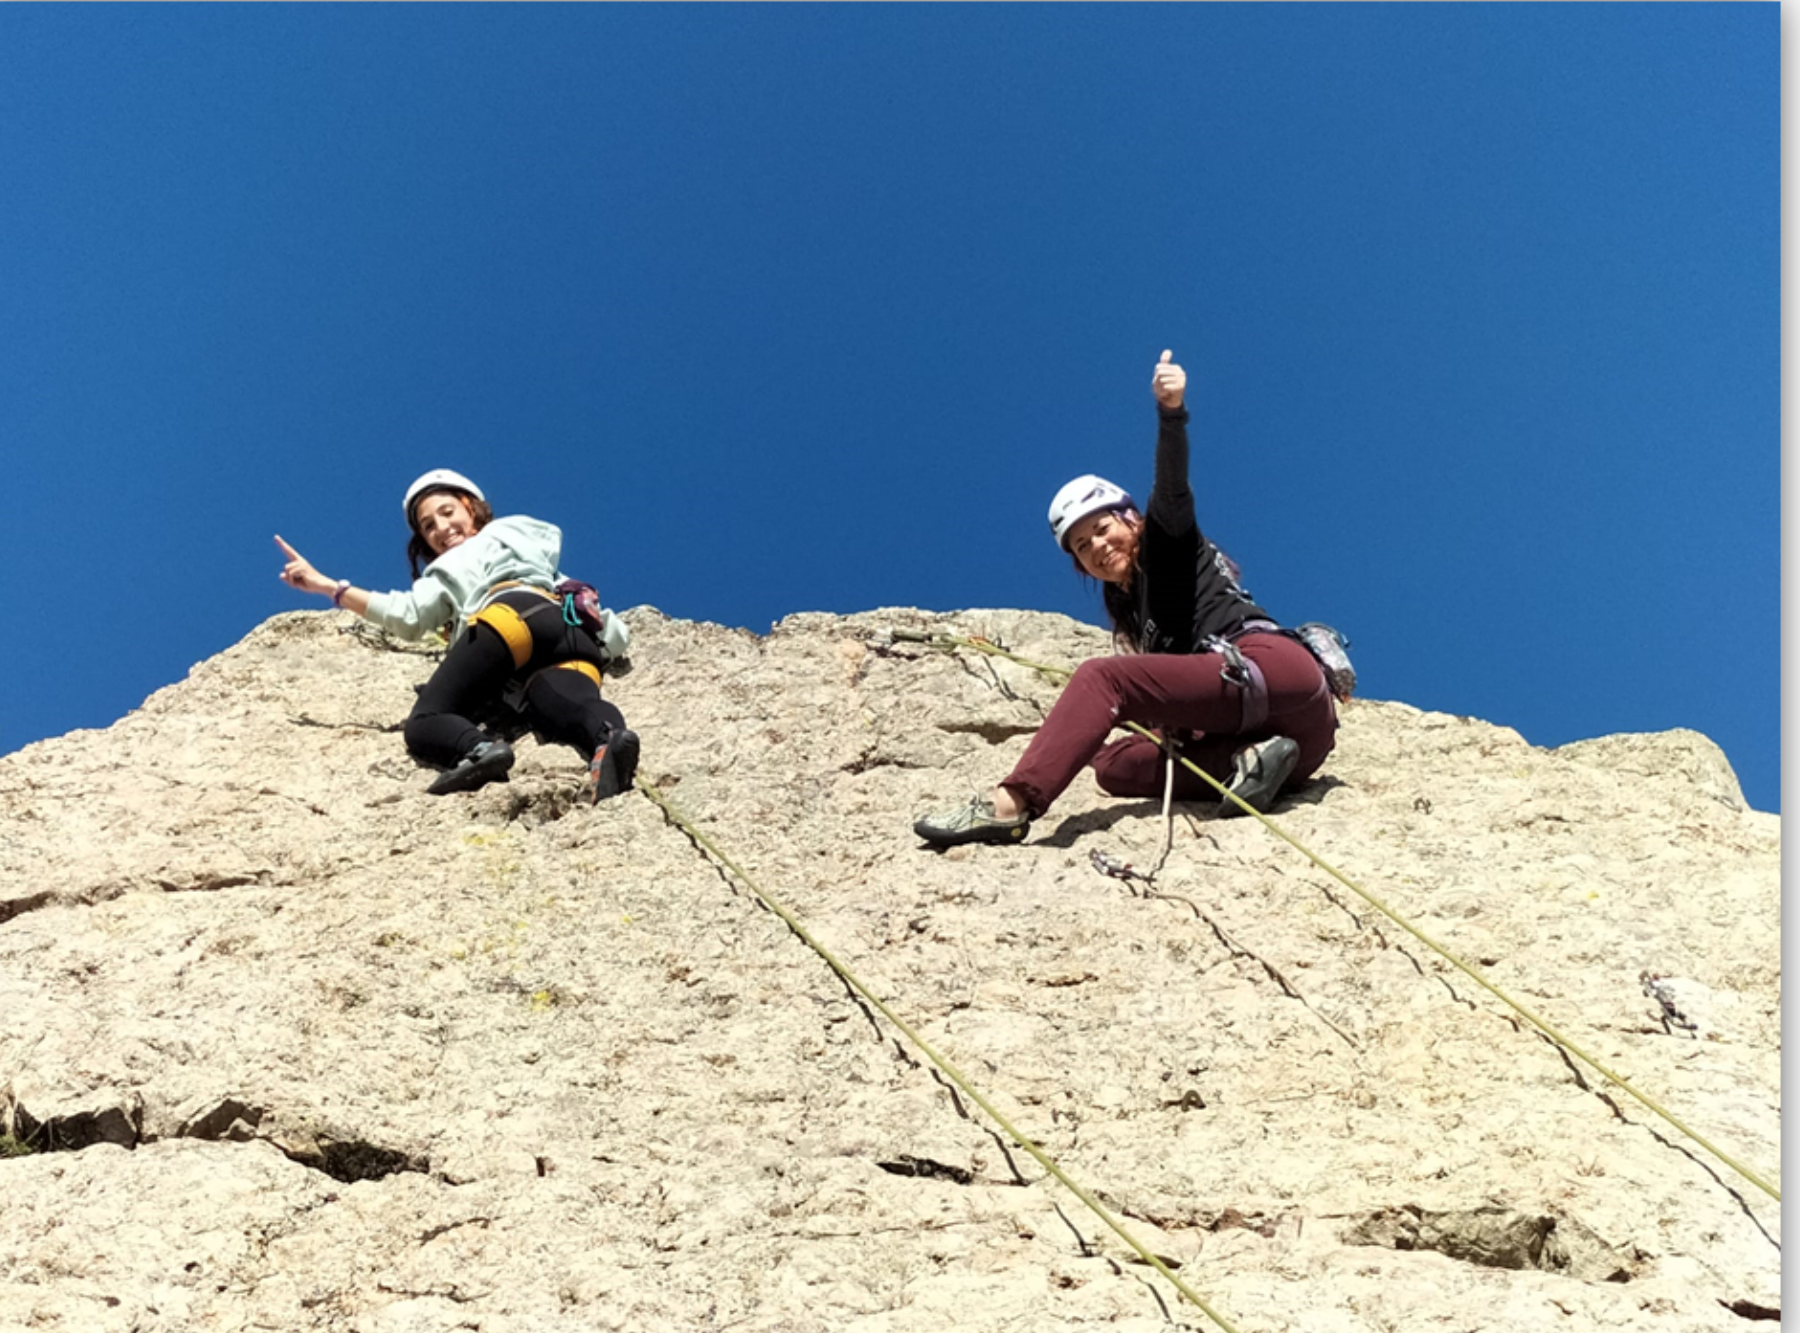 Sorprendemos a dos escaladoras muy sonrientes en el top de una vía de escalada en roca. Situadas junto a la reunión de la vía, nos indican con la mano levantada que han completado el ascenso. Esta pared de roca se encuentra situada en la provincia de Badajoz (Extremadura).